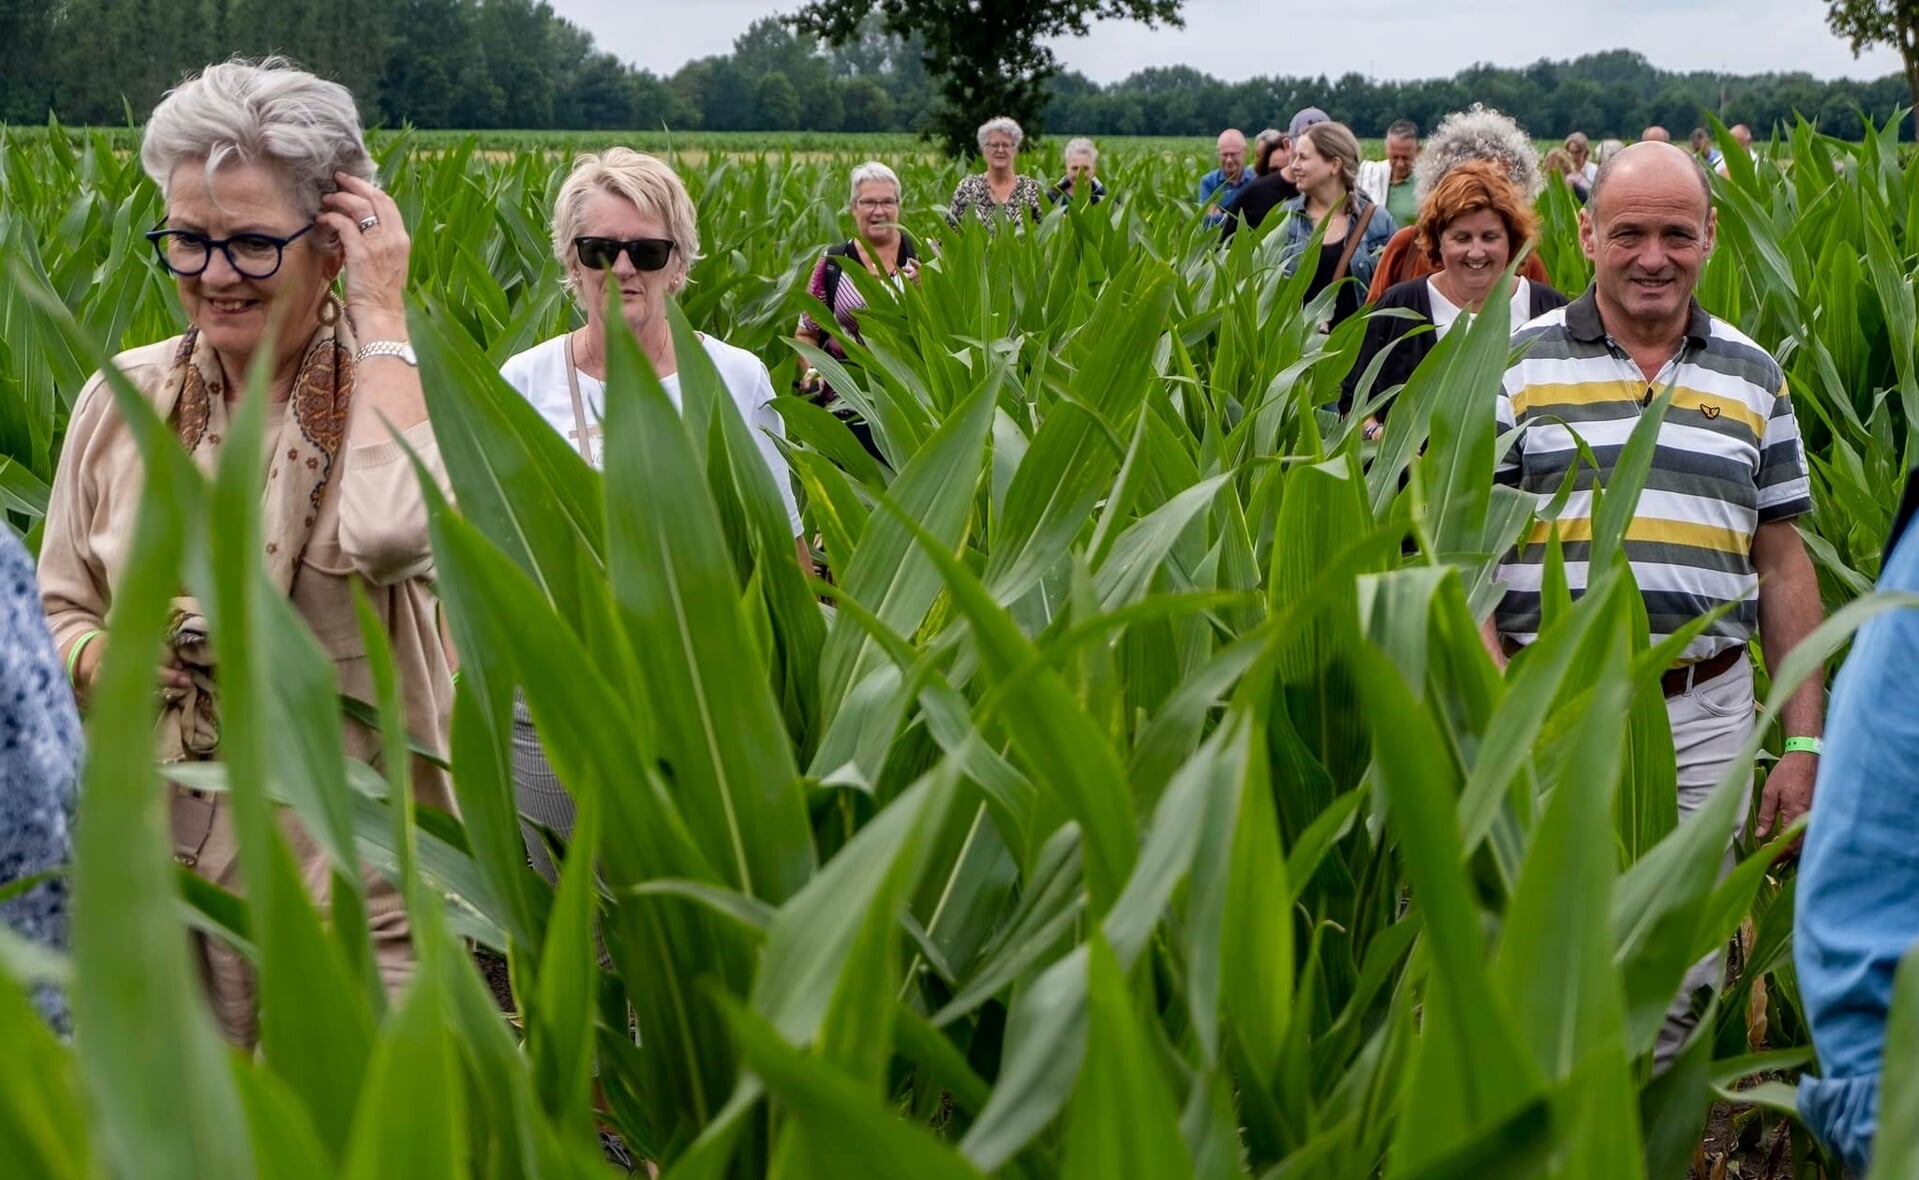 Bezoekers aan Live in Liempde gaan door een maisveld op weg naar een volgende locatie.